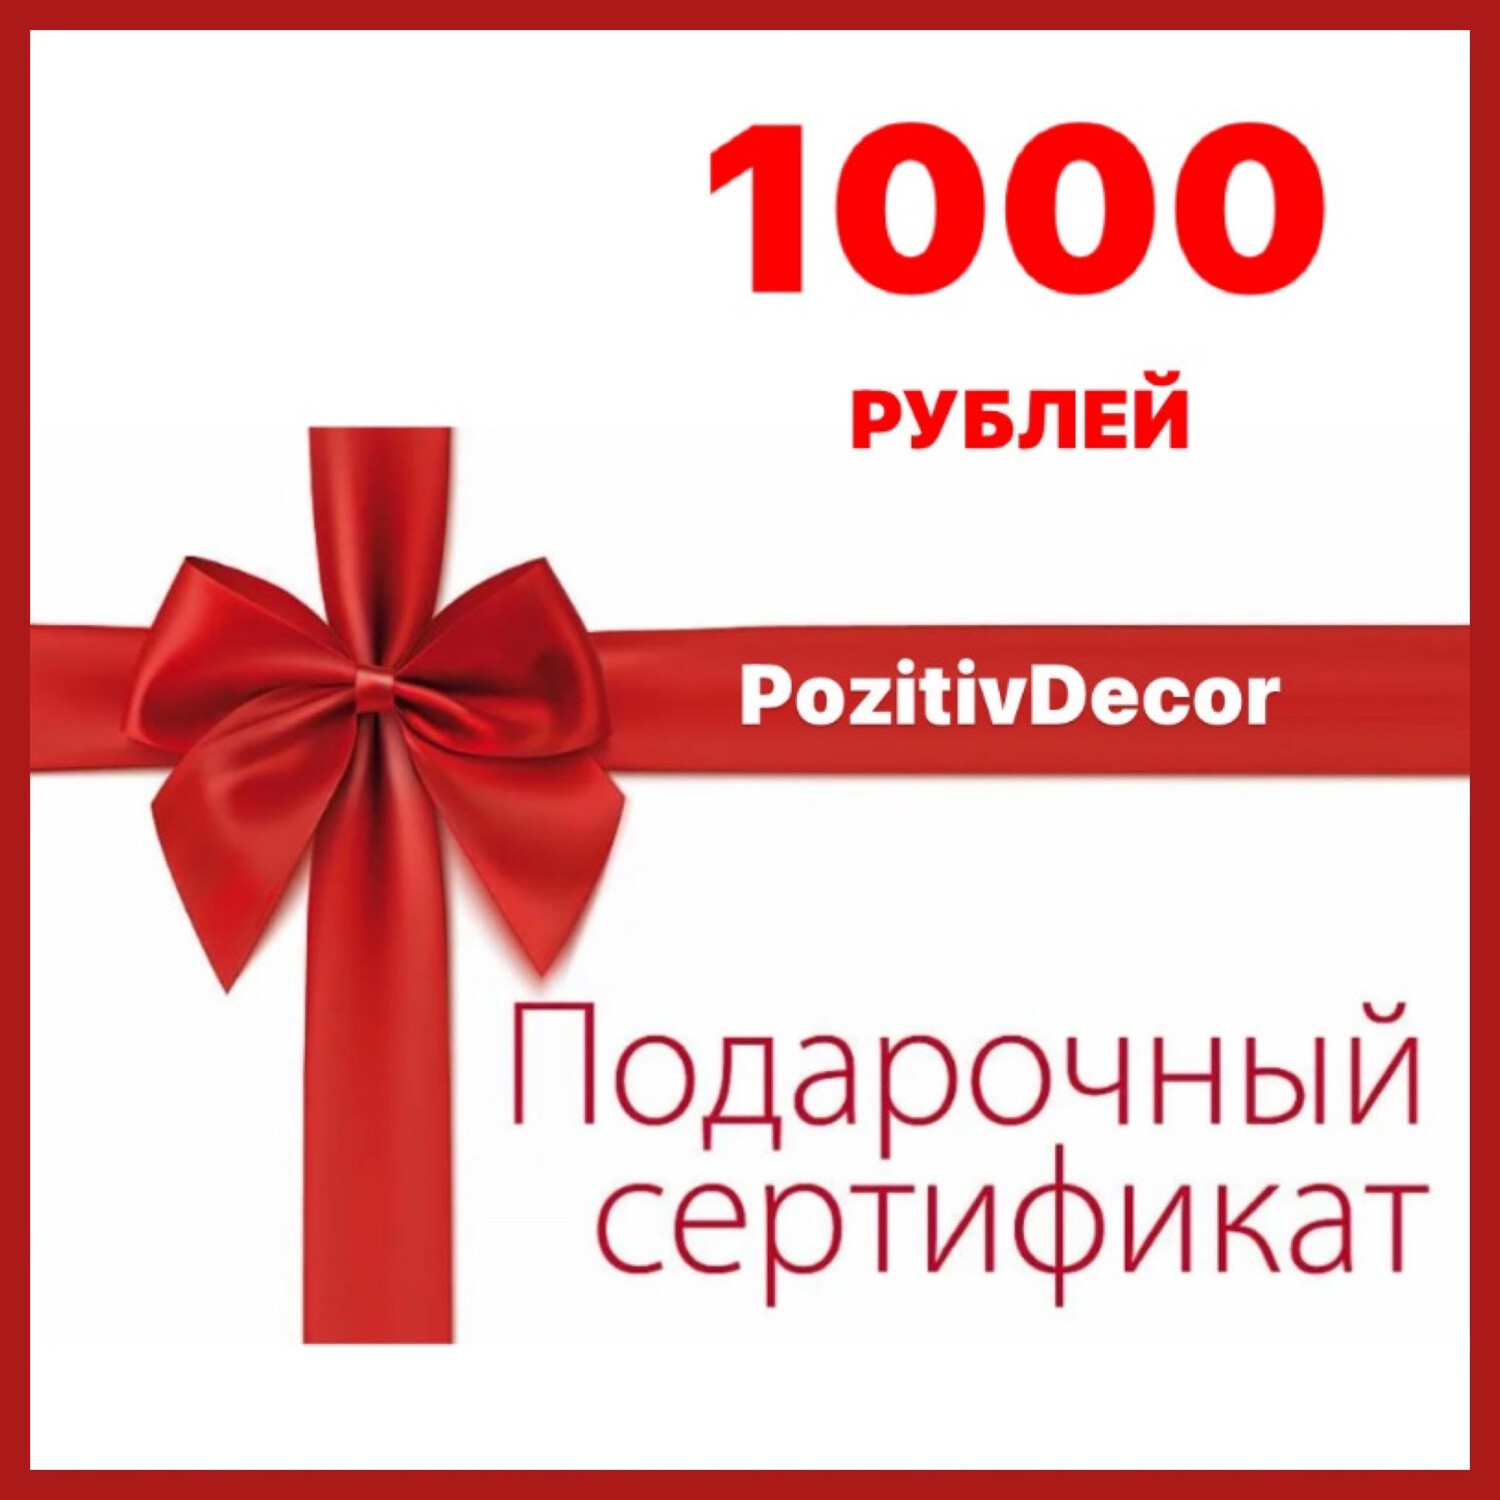 ПОДАРОЧНЫЙ СЕРТИФИКАТ -1000 рублей